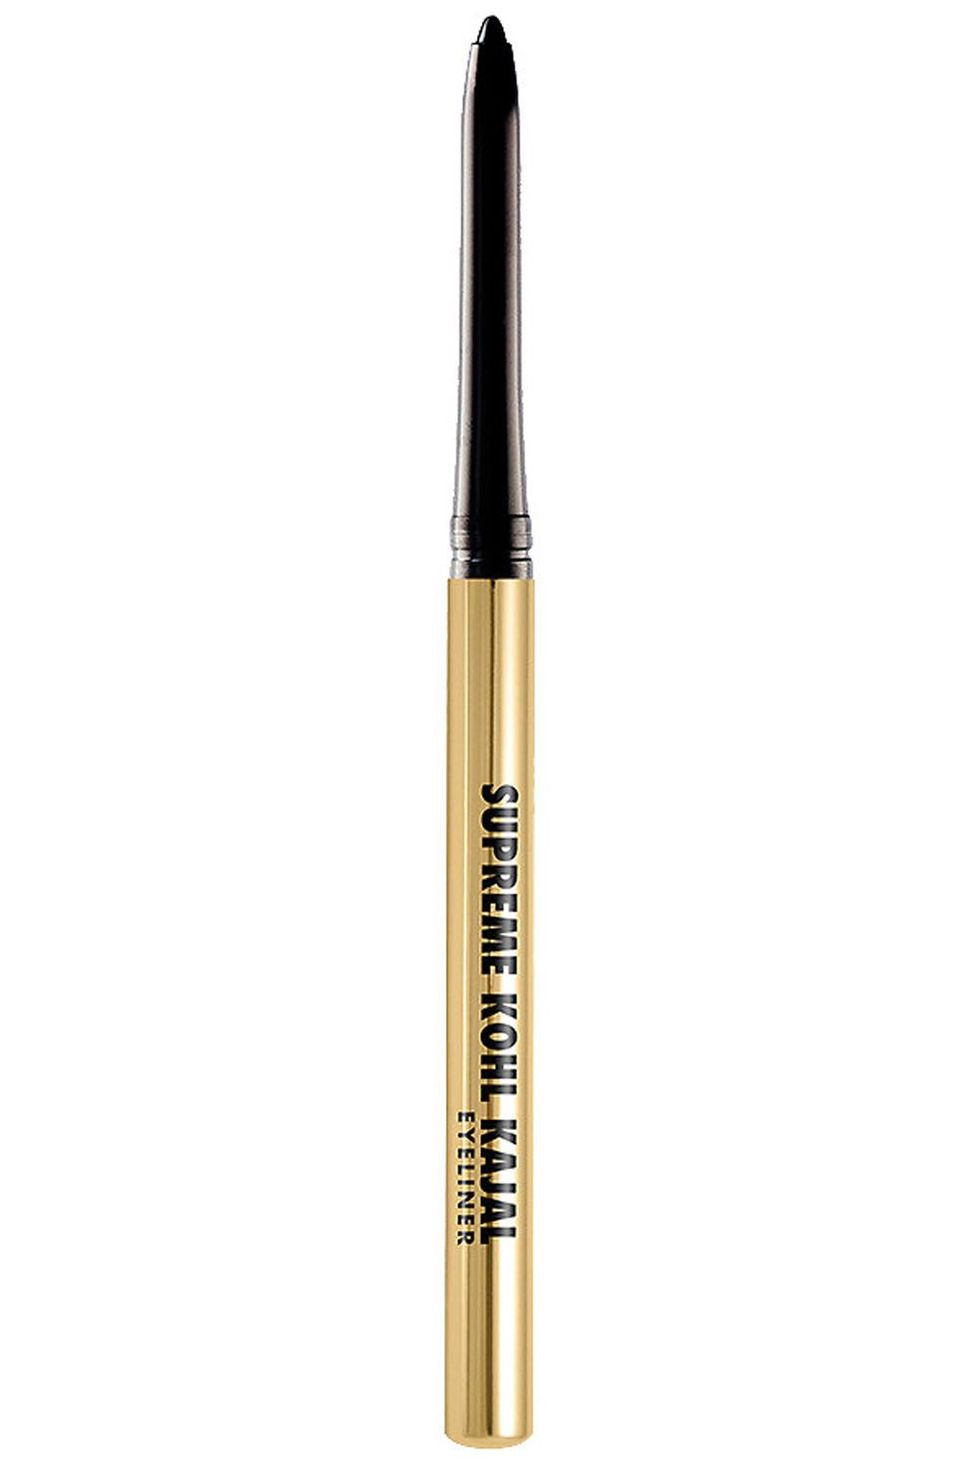 Milani Supreme Kohl Kajal Eyeliner Pencil